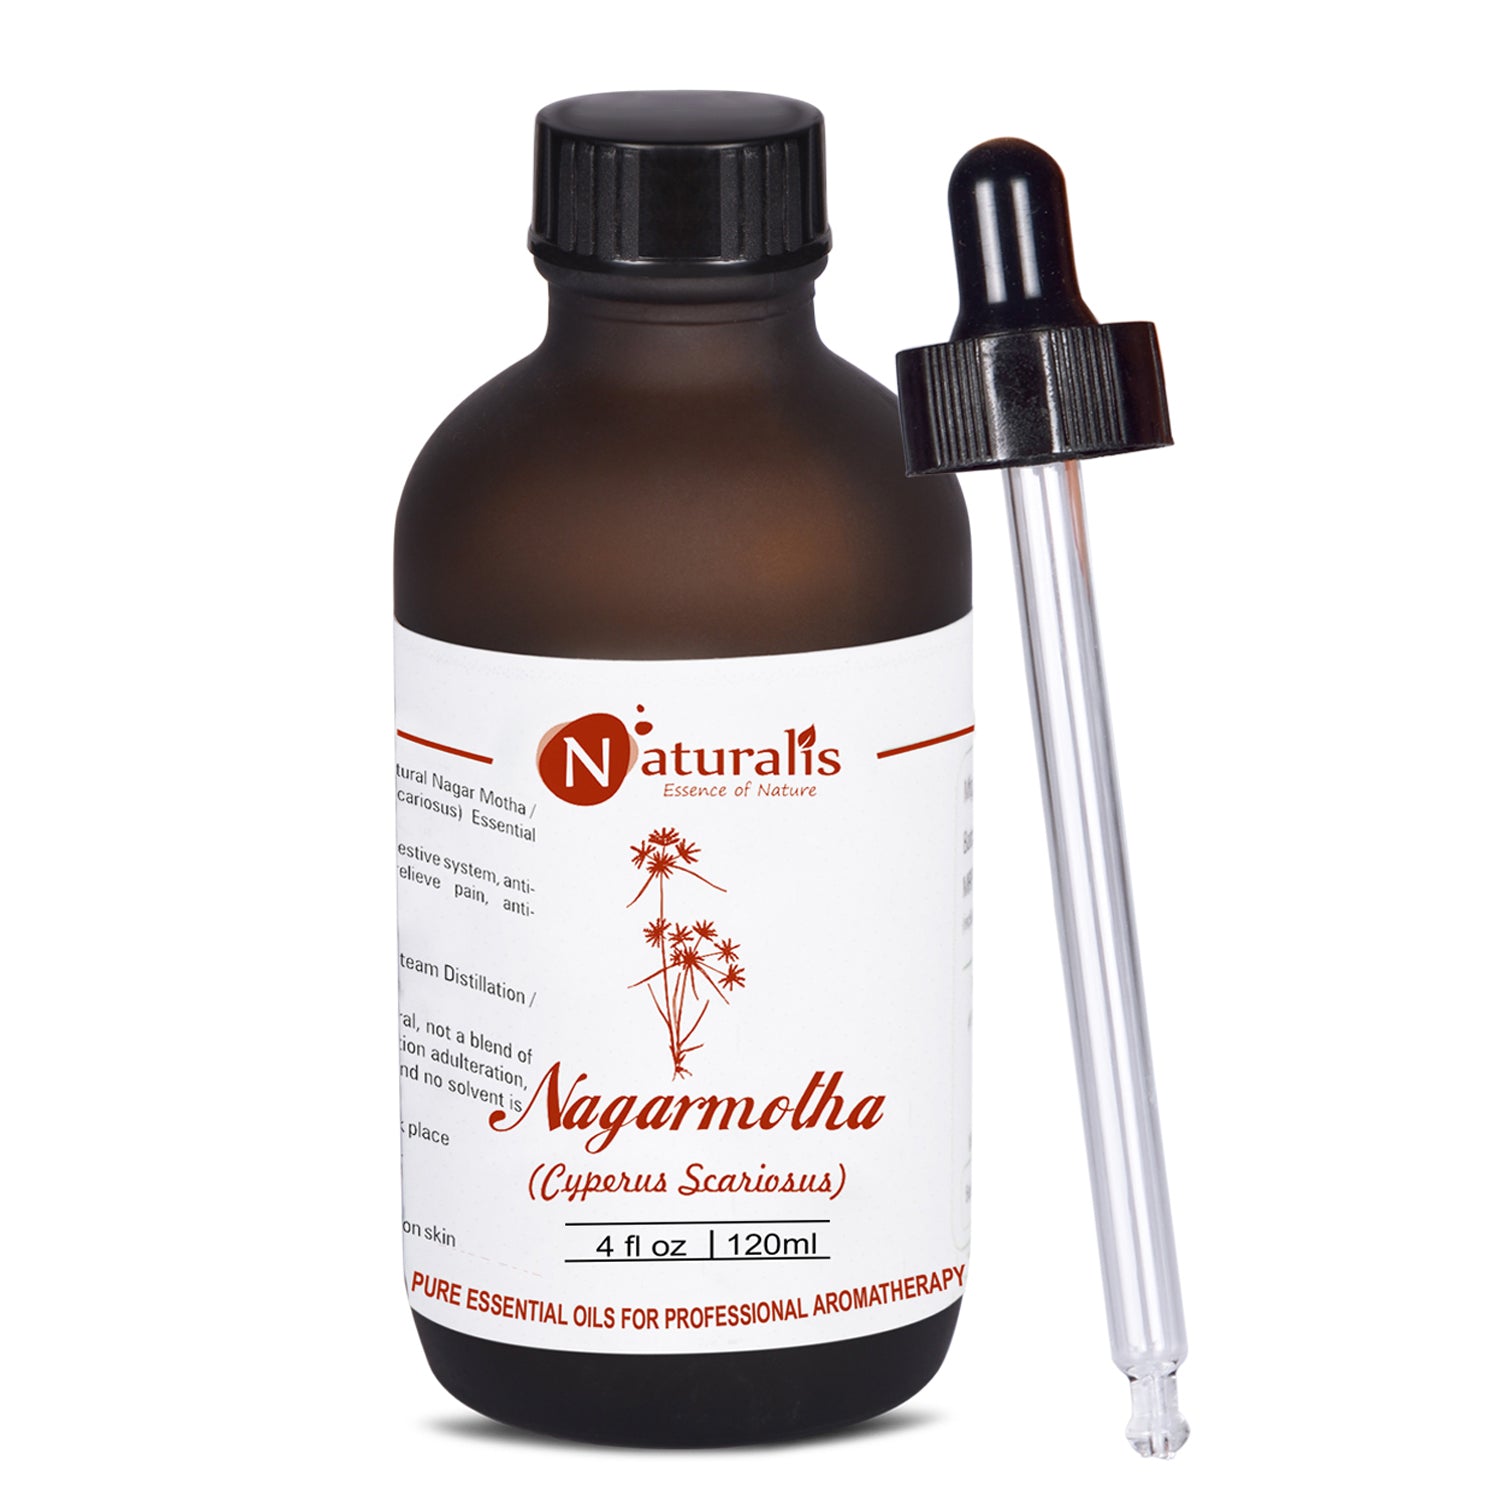 Nagarmotha Essential Oil by Naturalis - Pure & Natural - Naturalis